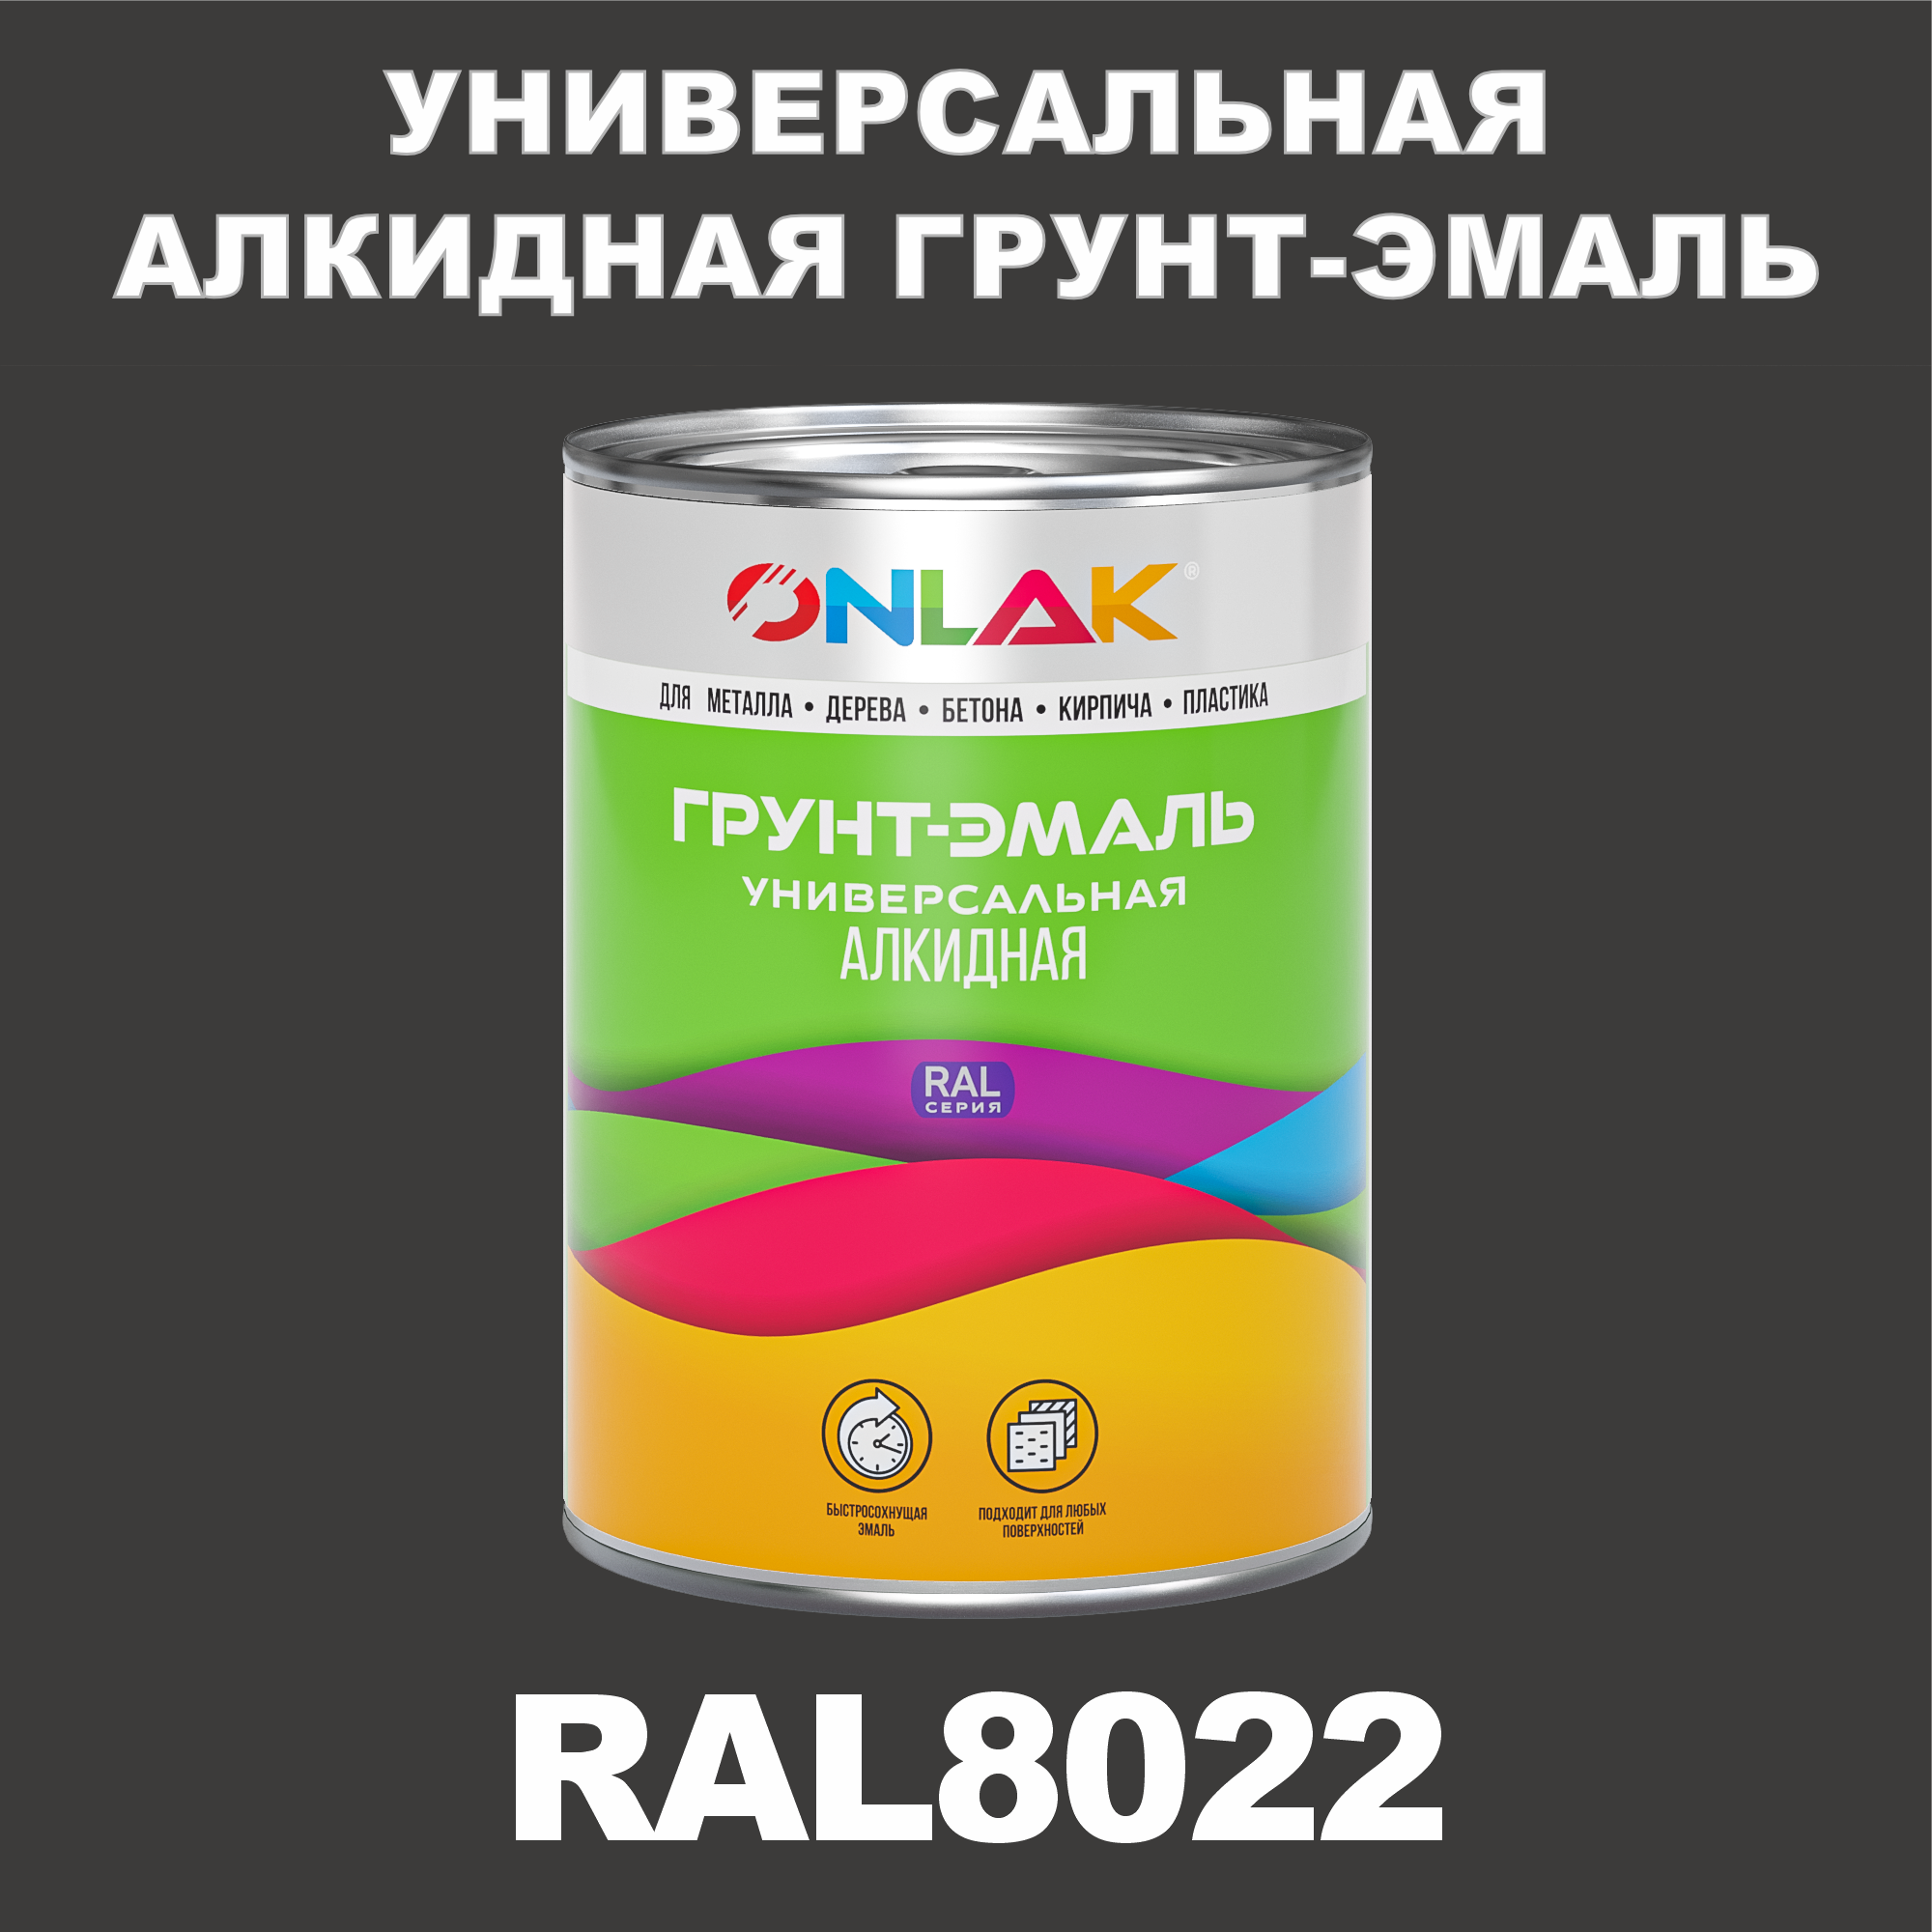 Грунт-эмаль ONLAK 1К RAL8022 антикоррозионная алкидная по металлу по ржавчине 1 кг грунт эмаль neomid по ржавчине быстросохнущая алкидная серая 0 9 кг